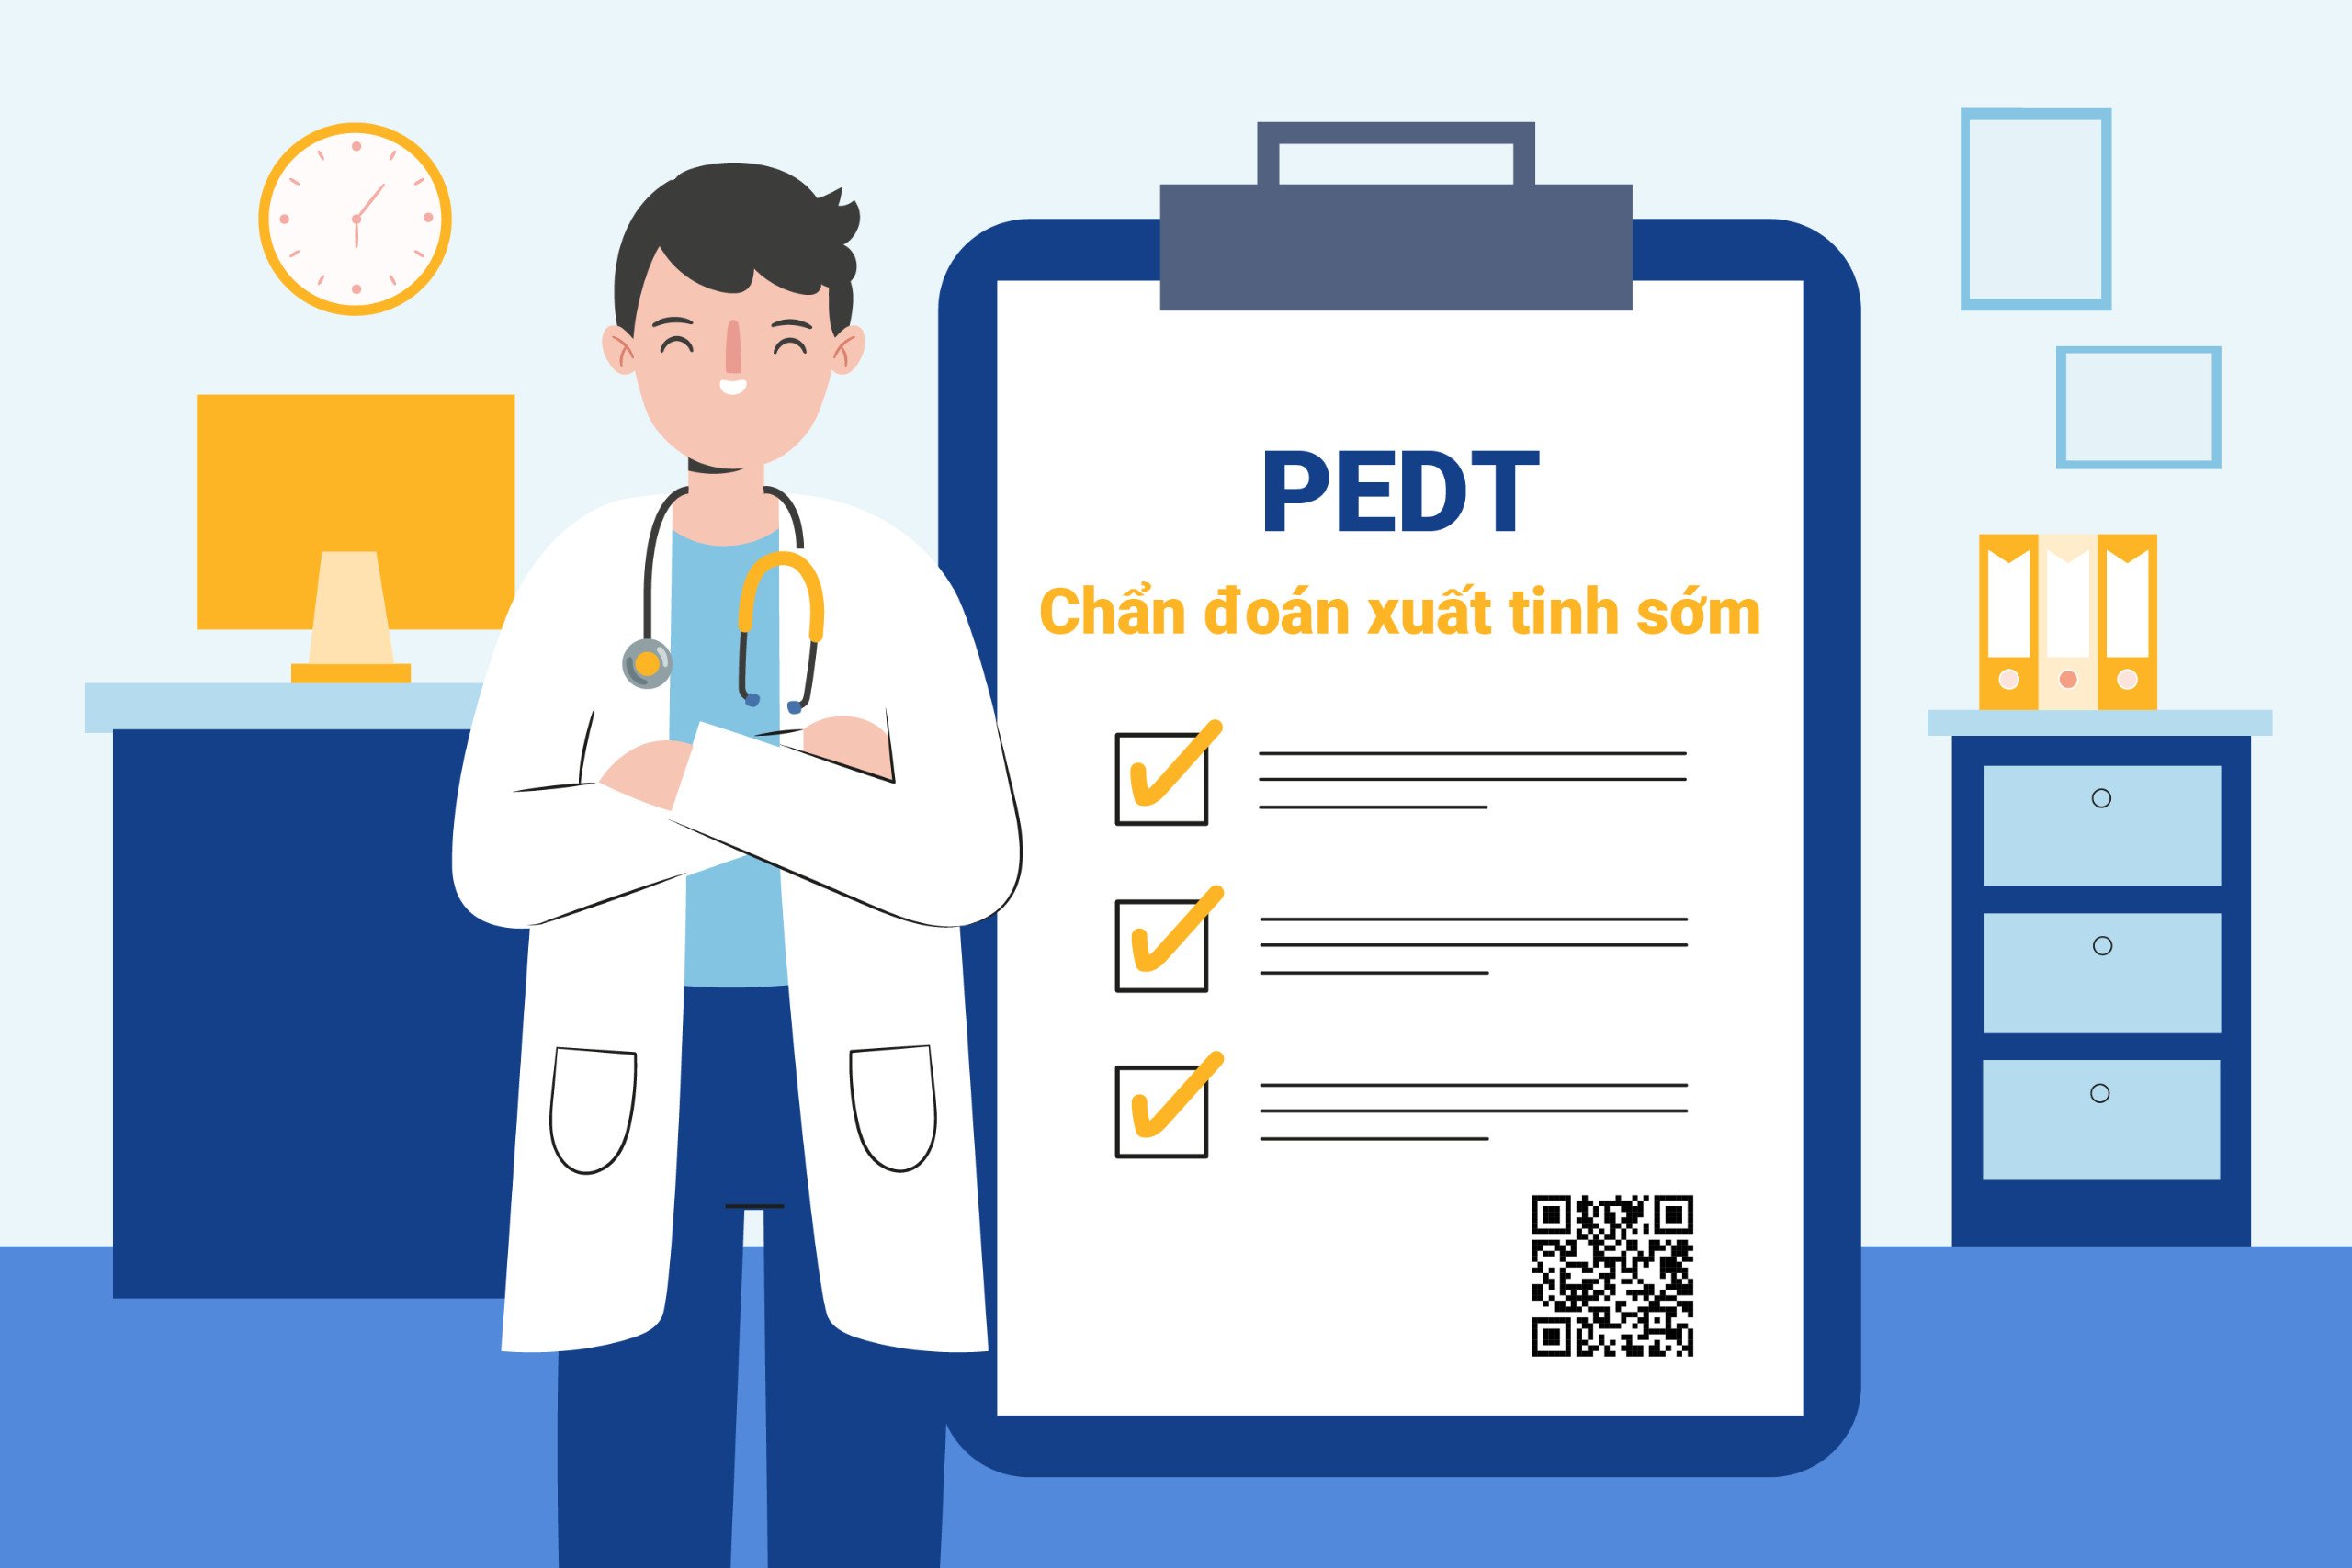 Bộ công cụ PEDT được sử dụng để chẩn đoán xuất tinh sớm